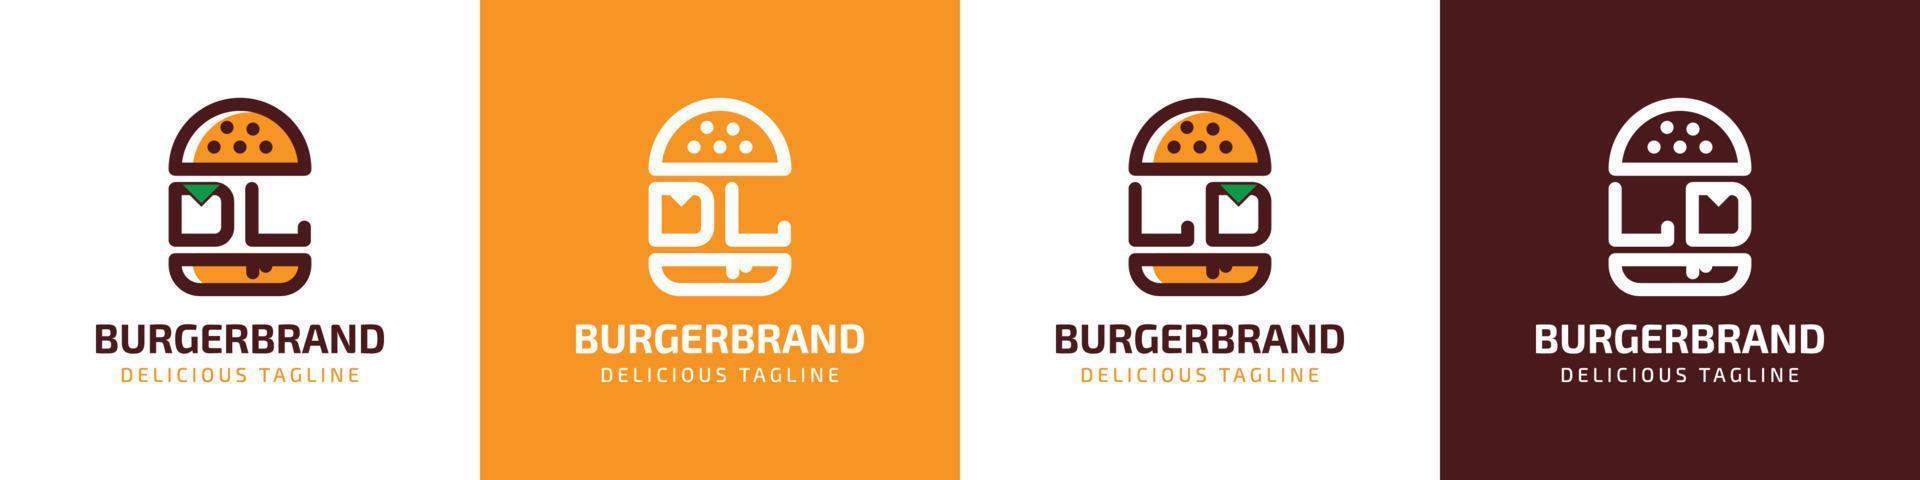 letra dl y ld hamburguesa logo, adecuado para ninguna negocio relacionado a hamburguesa con dl o ld iniciales. vector